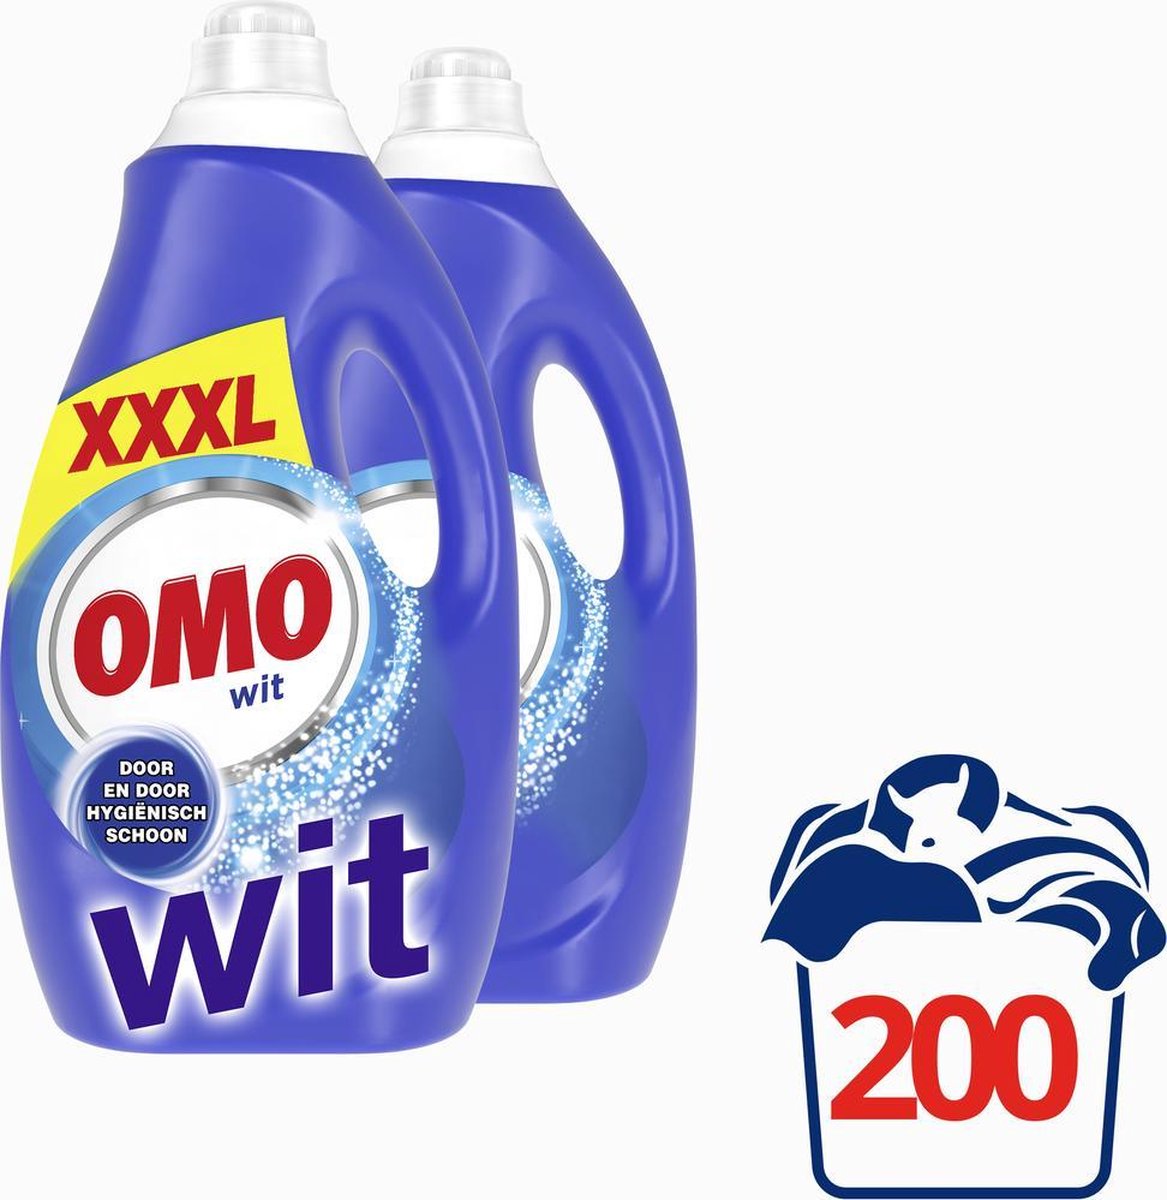 Détergent Liquide OMO Blanc 4000 ml - Onlinevoordeelshop